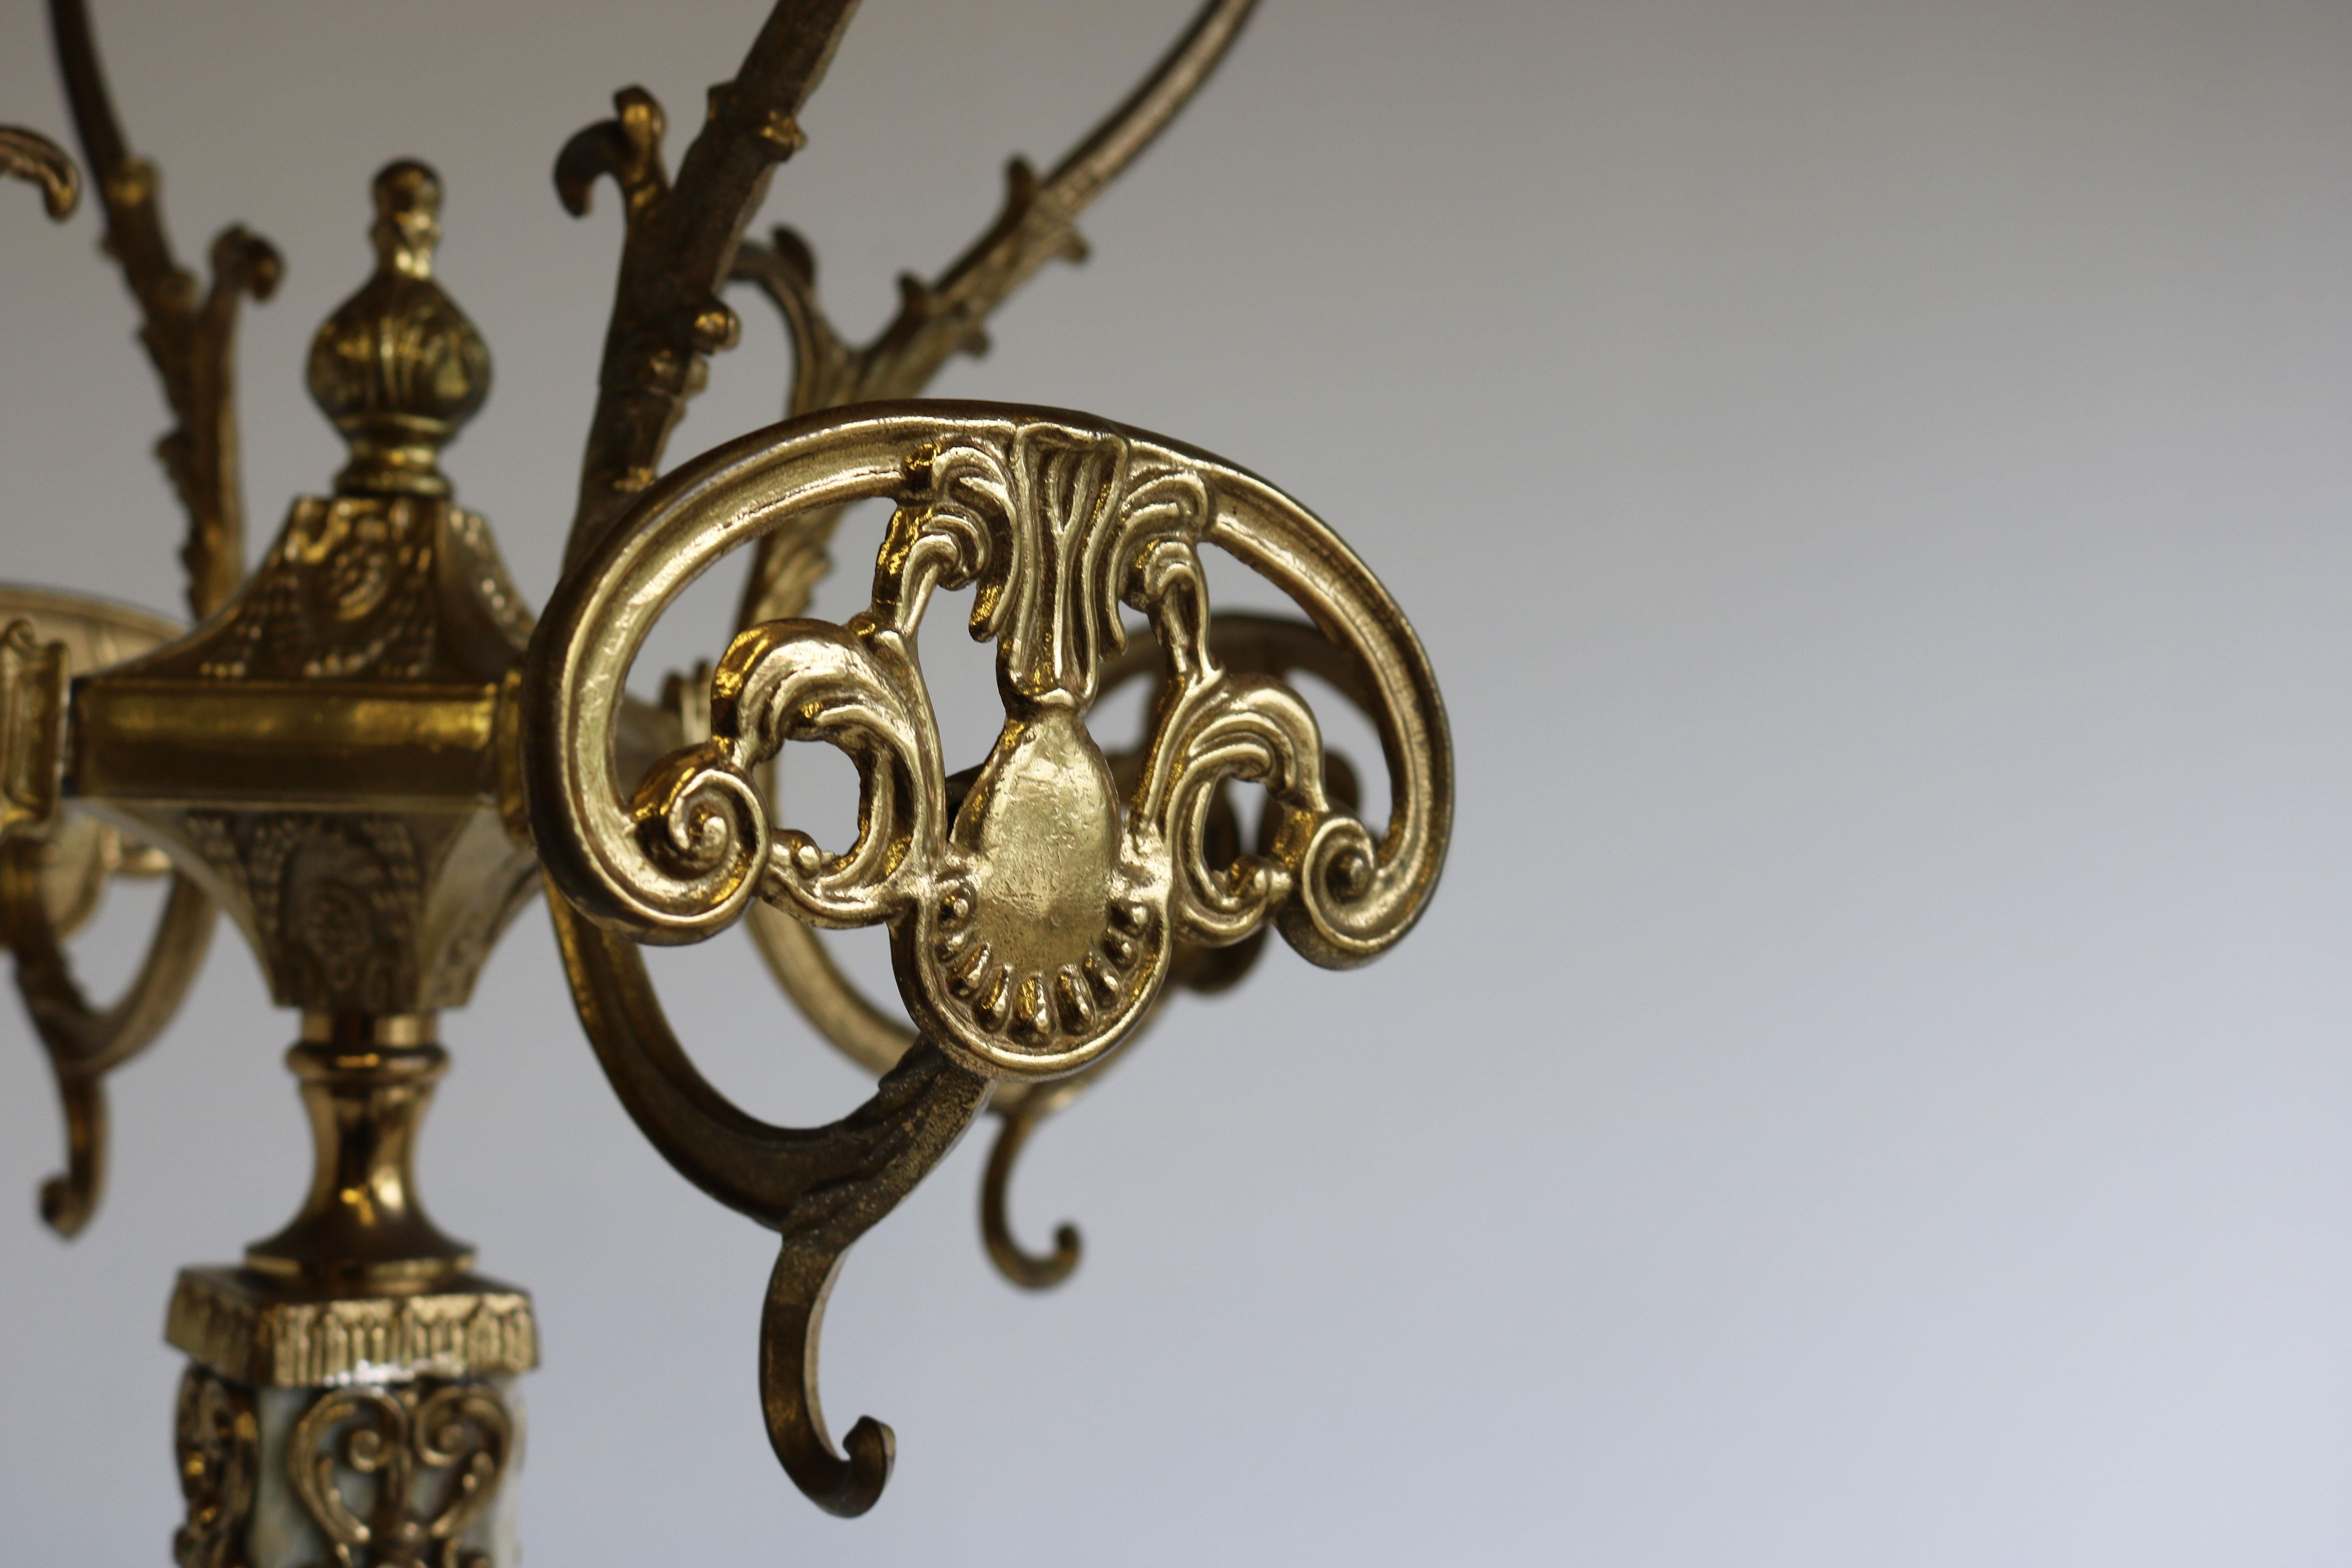 Carved Italian Ornate Brass Marble Luxury Coat Rack Hall Tree 50s Hallway Hat Rack Onyx